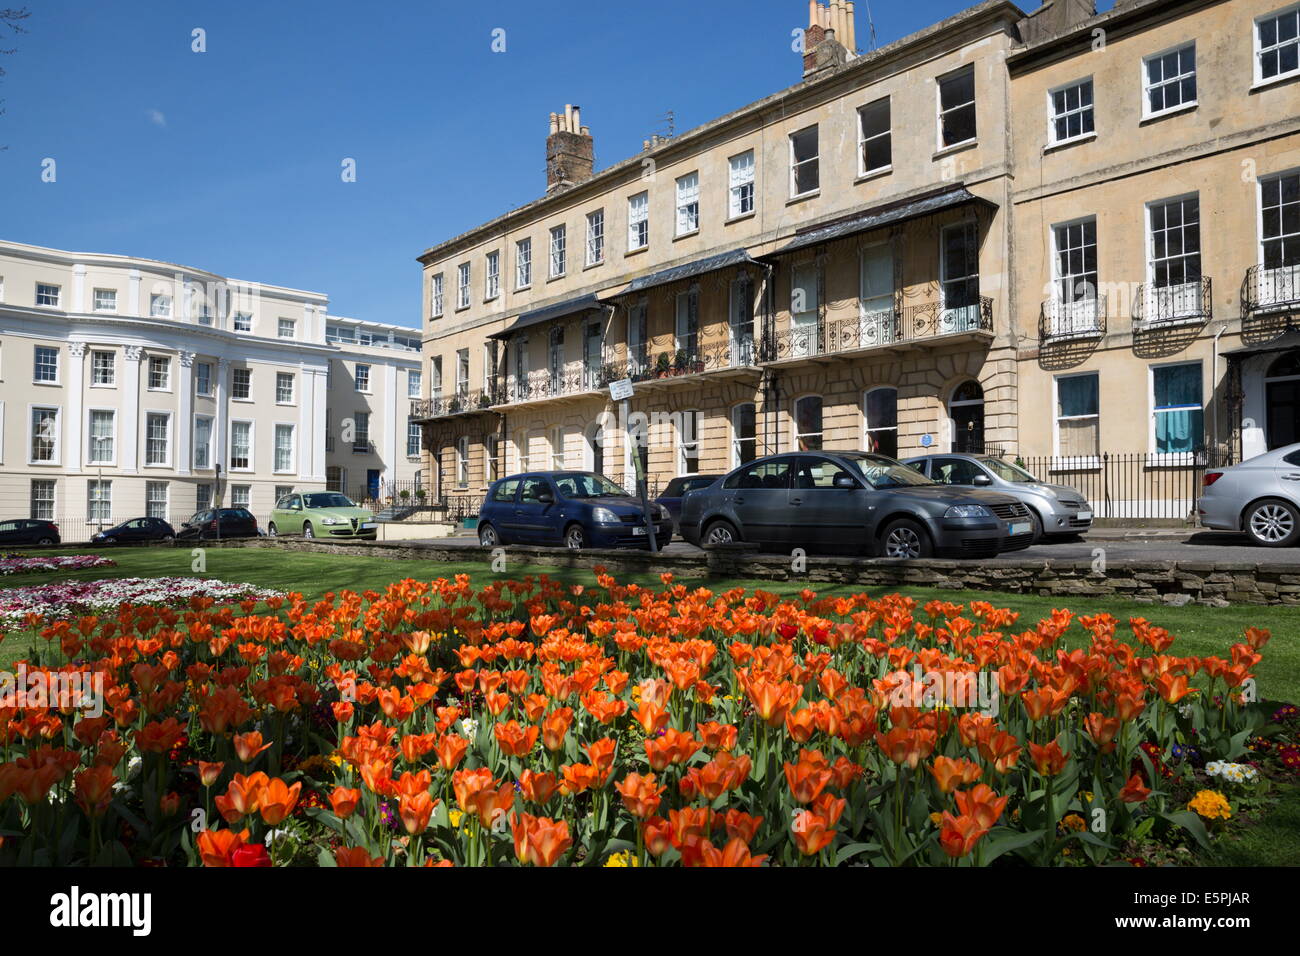 Prieuré de maisons de style Régence, Parade de printemps avec des tulipes, Cheltenham, Gloucestershire, Angleterre, Royaume-Uni, Europe Banque D'Images